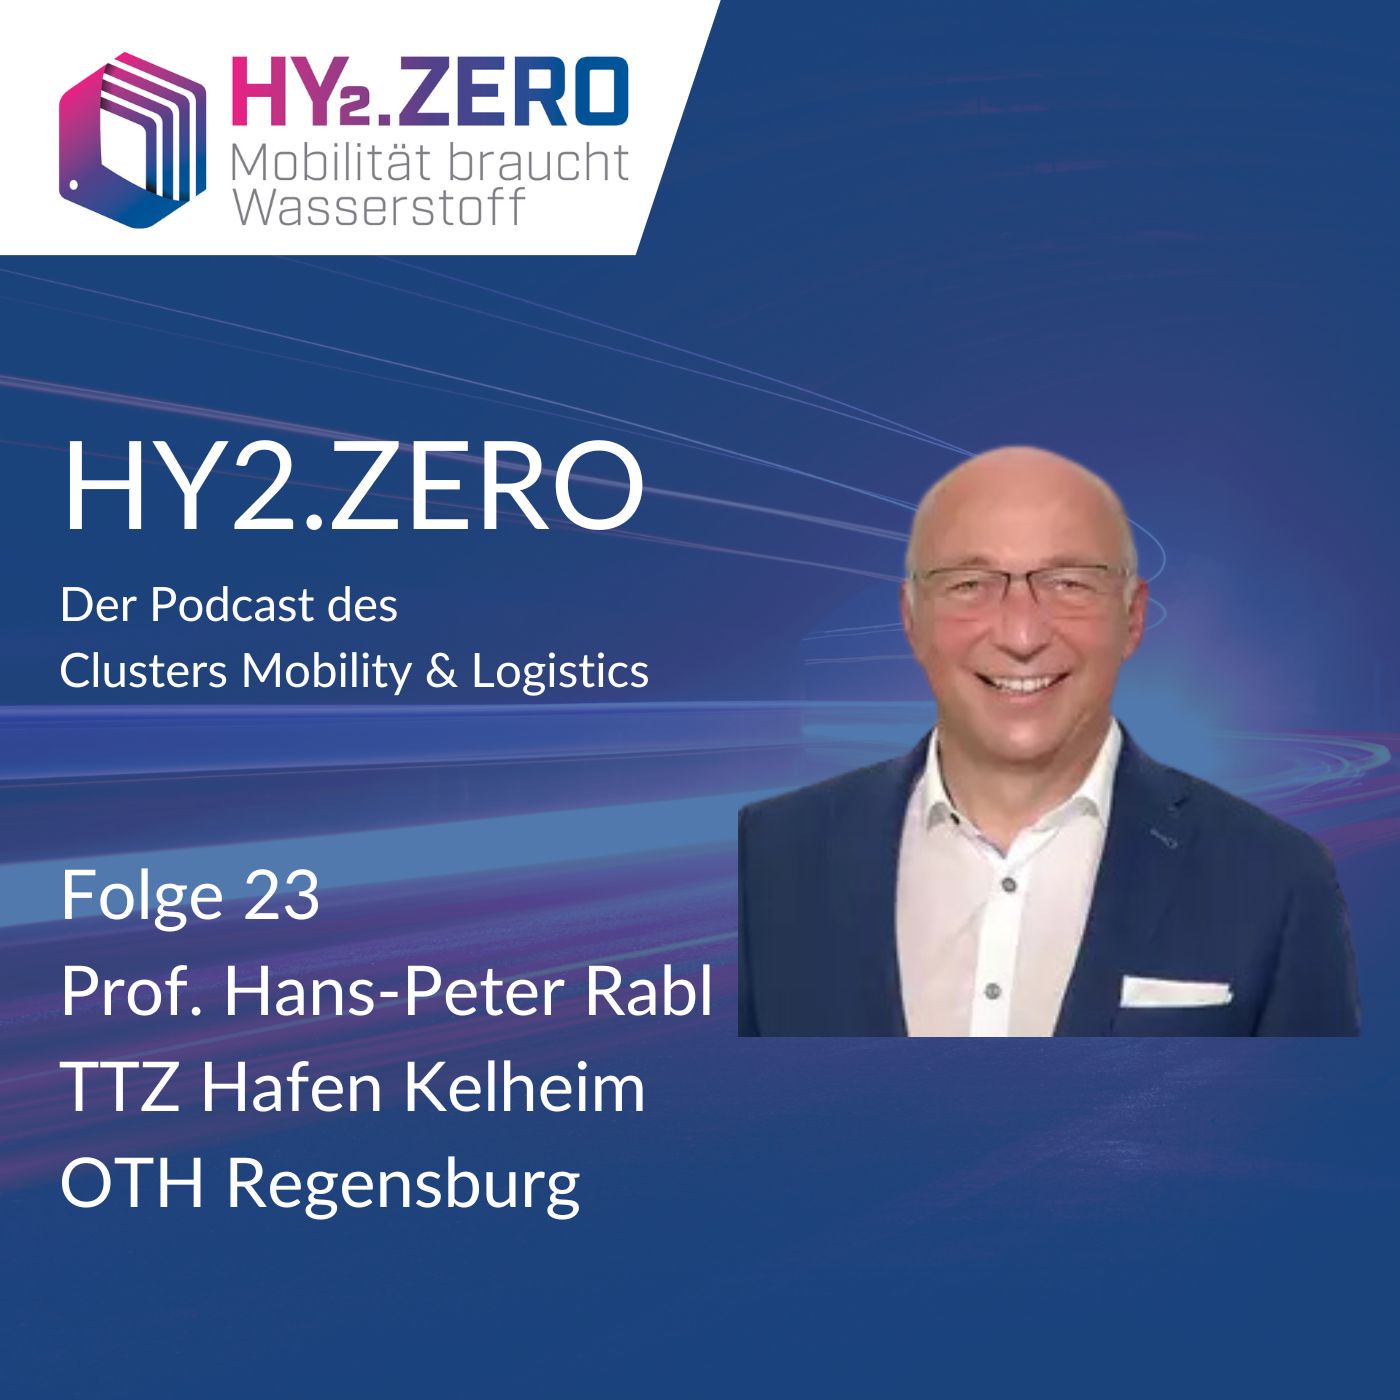 HY2.ZERO - Technologietransferzentrum Wasserstoff-Cluster Donau am Hafen Kelheim OTH Regensburg